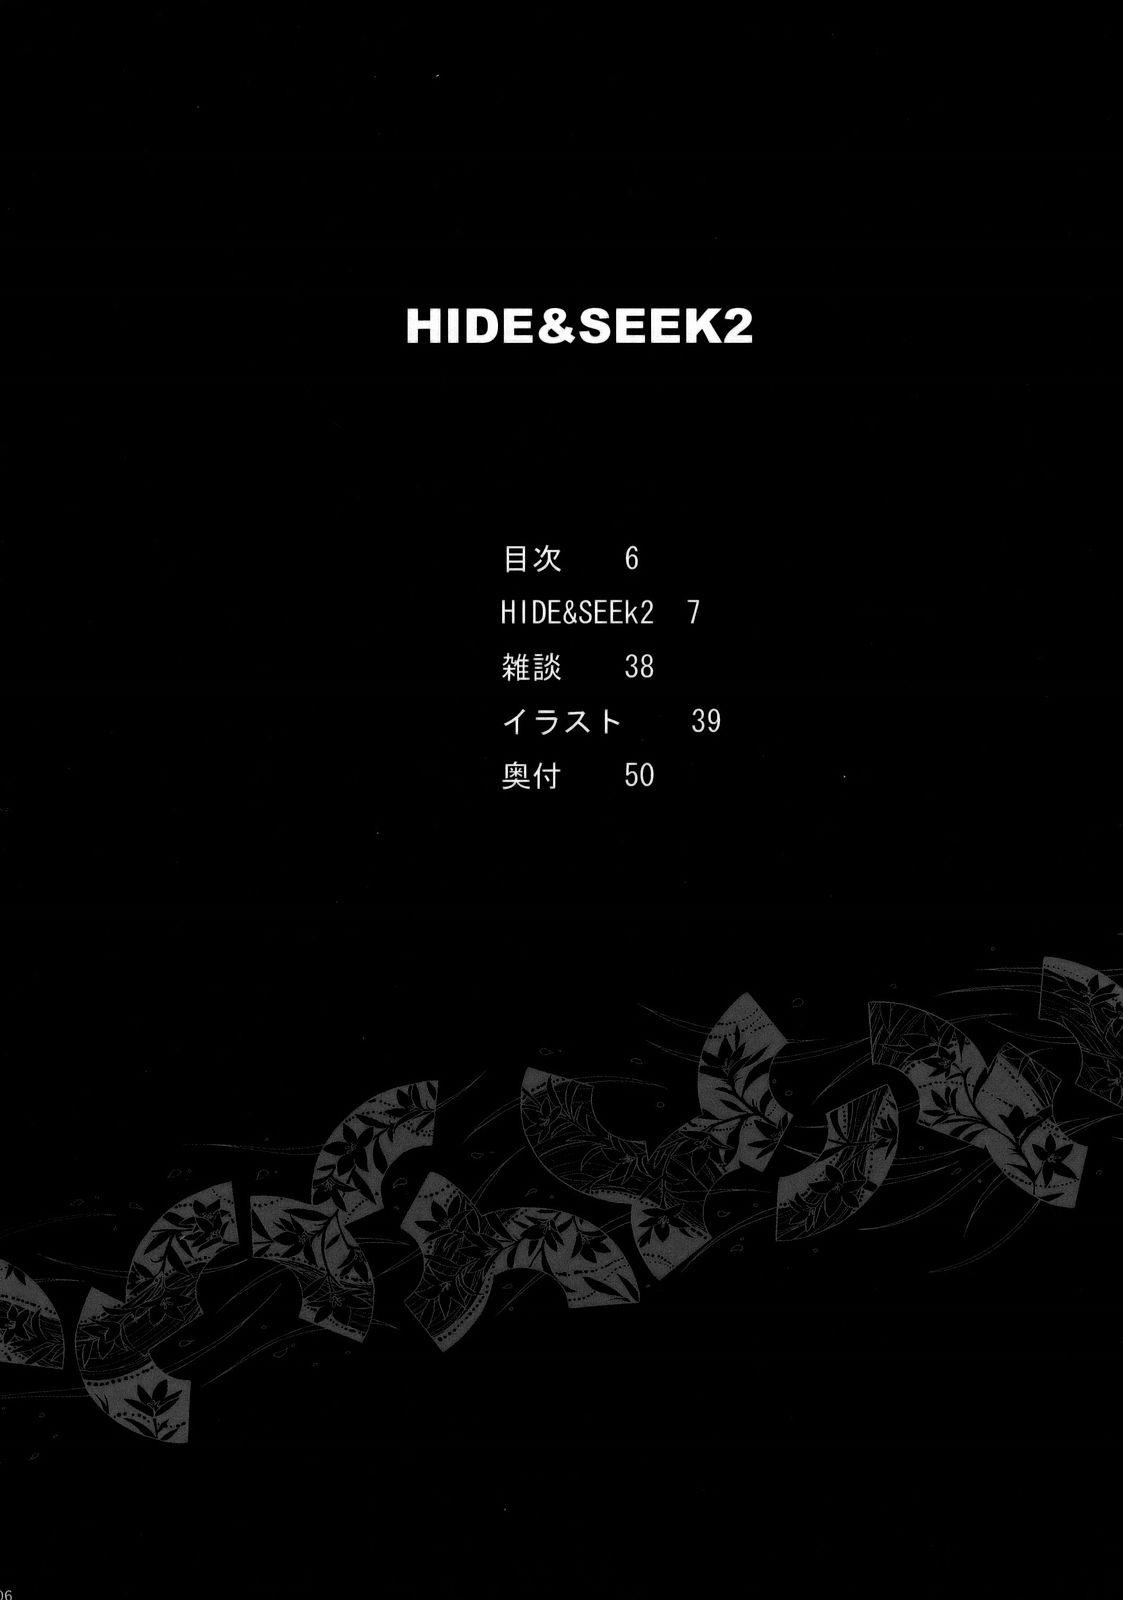 HIDE&SEEK 2 4